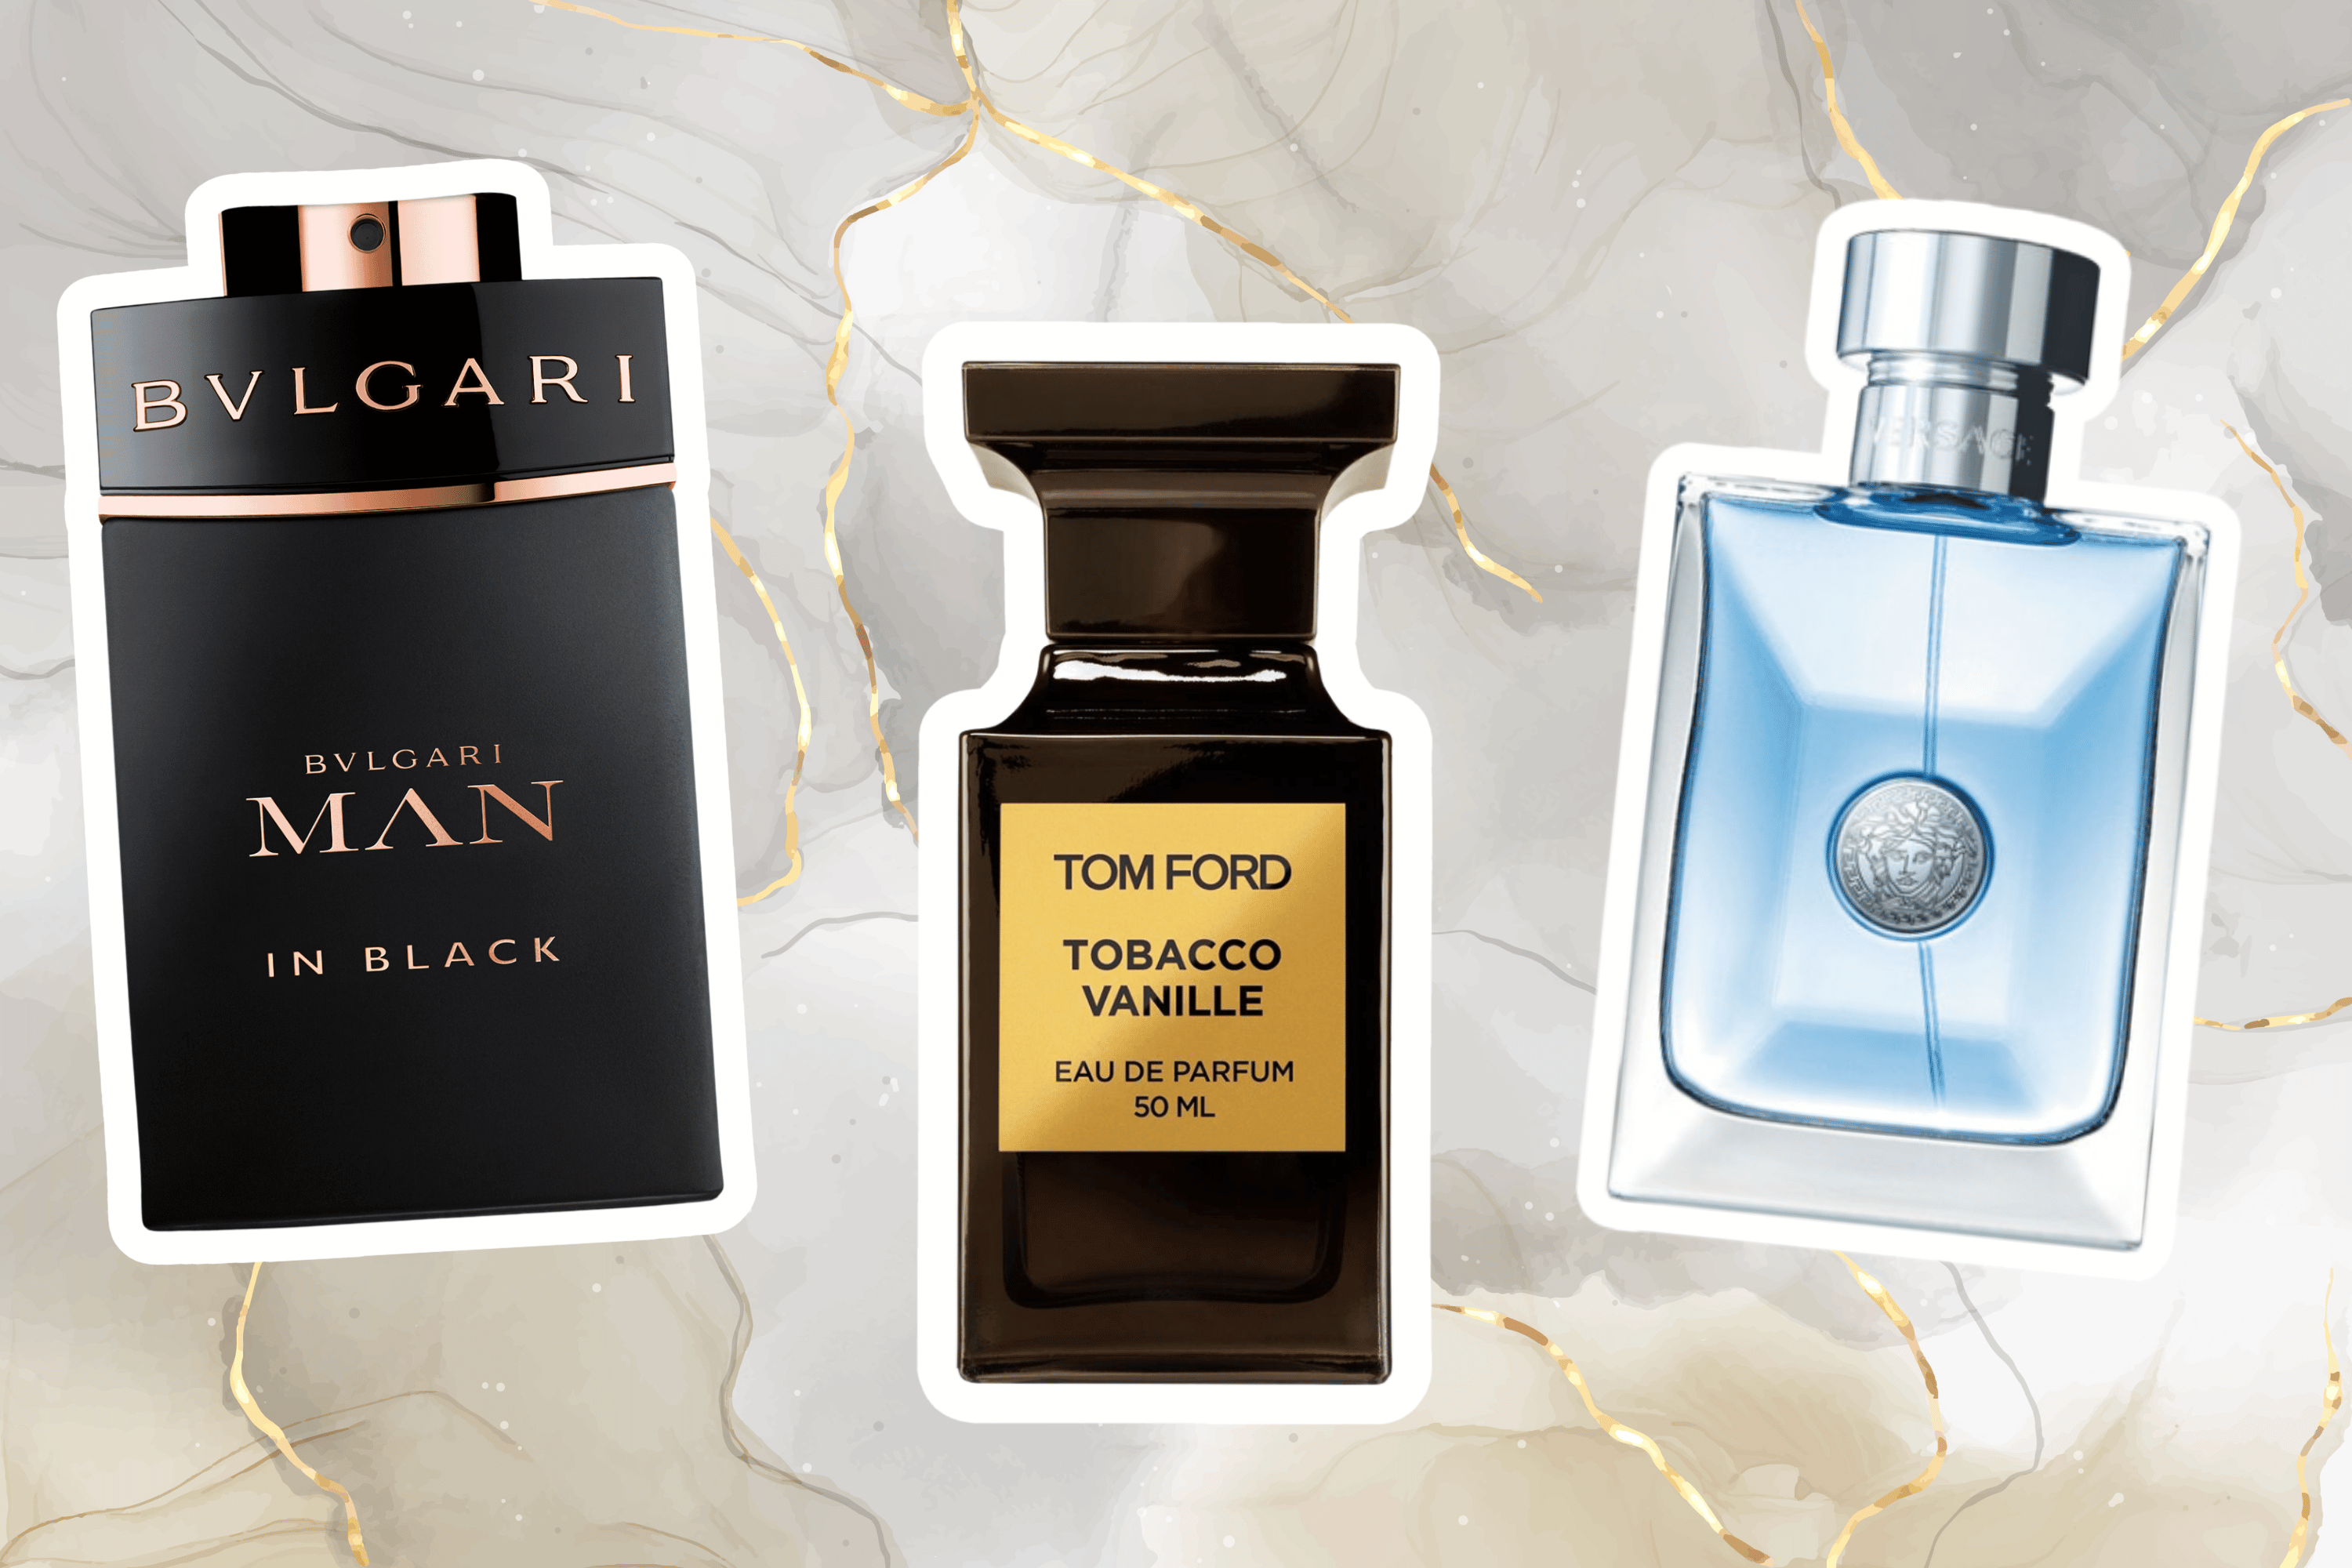 Luxury Fragrances